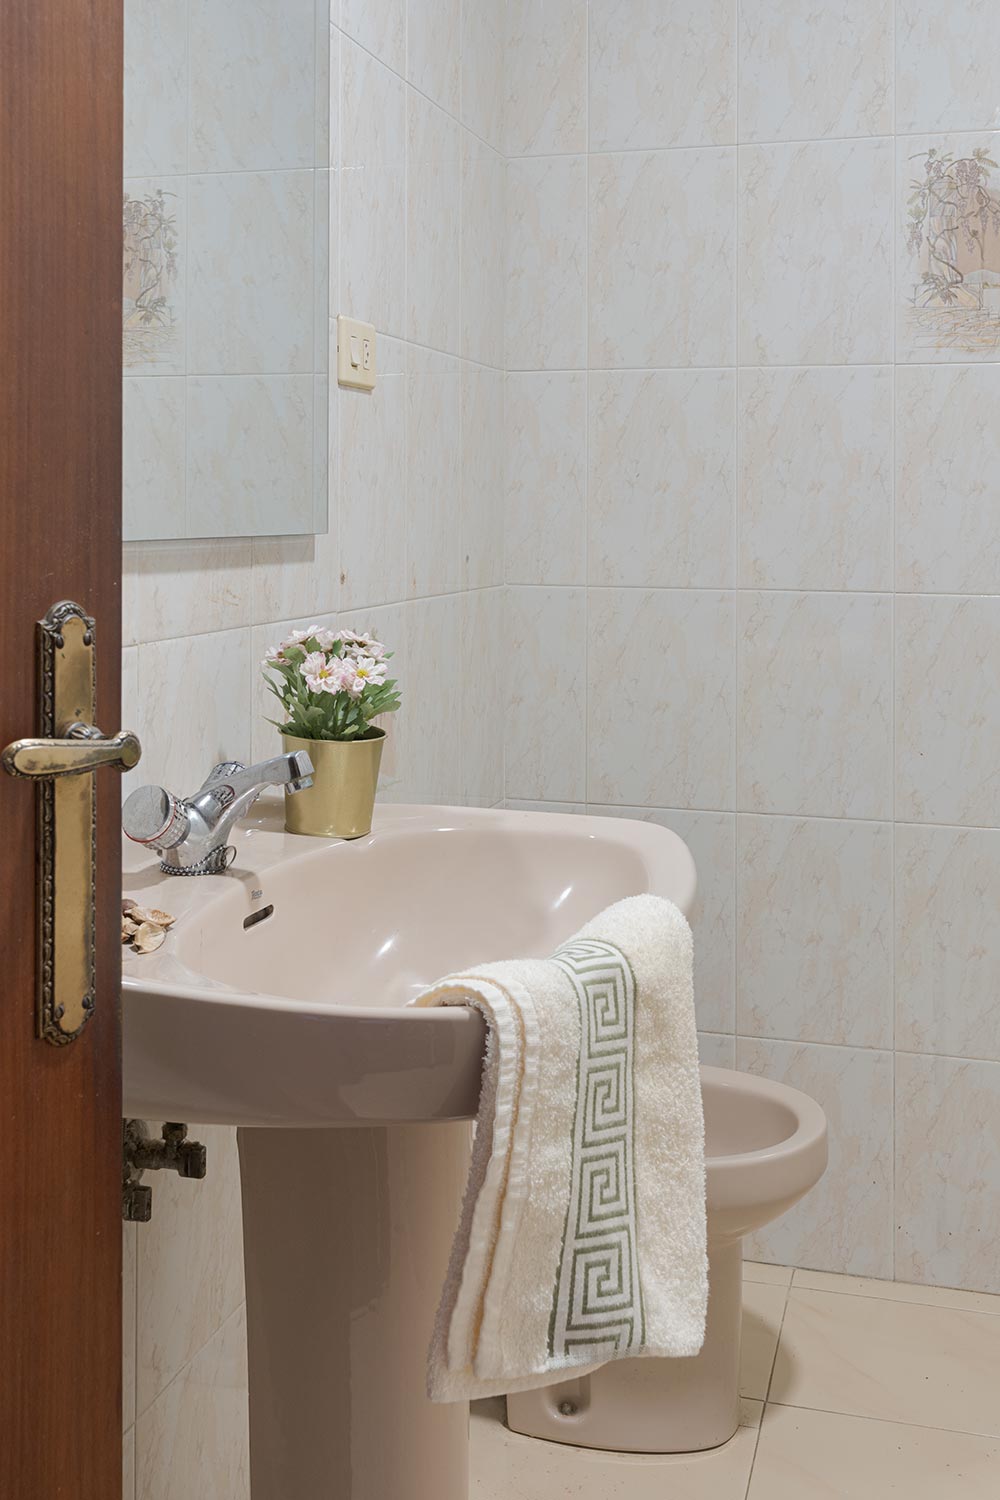 Un baño sencillo con azulejos de mármol beige, un lavabo estándar con una toalla y un pequeño ramo de flores decorativo, creando un ambiente práctico y sin pretensiones